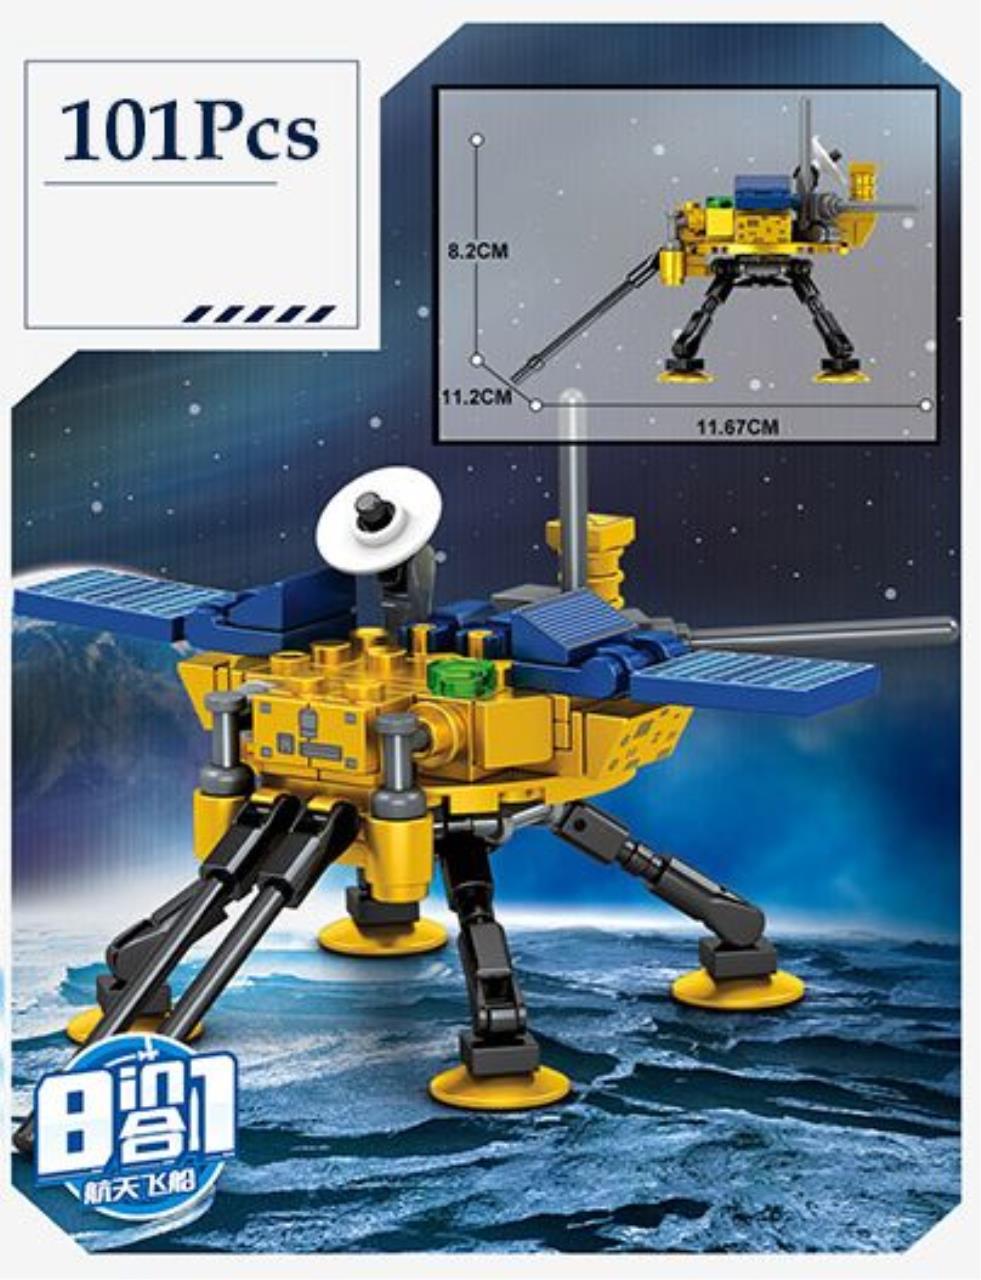 Игровой набор конструктор Sembo Космический корабль, 203314, 101 шт playmobil конструктор космический агент